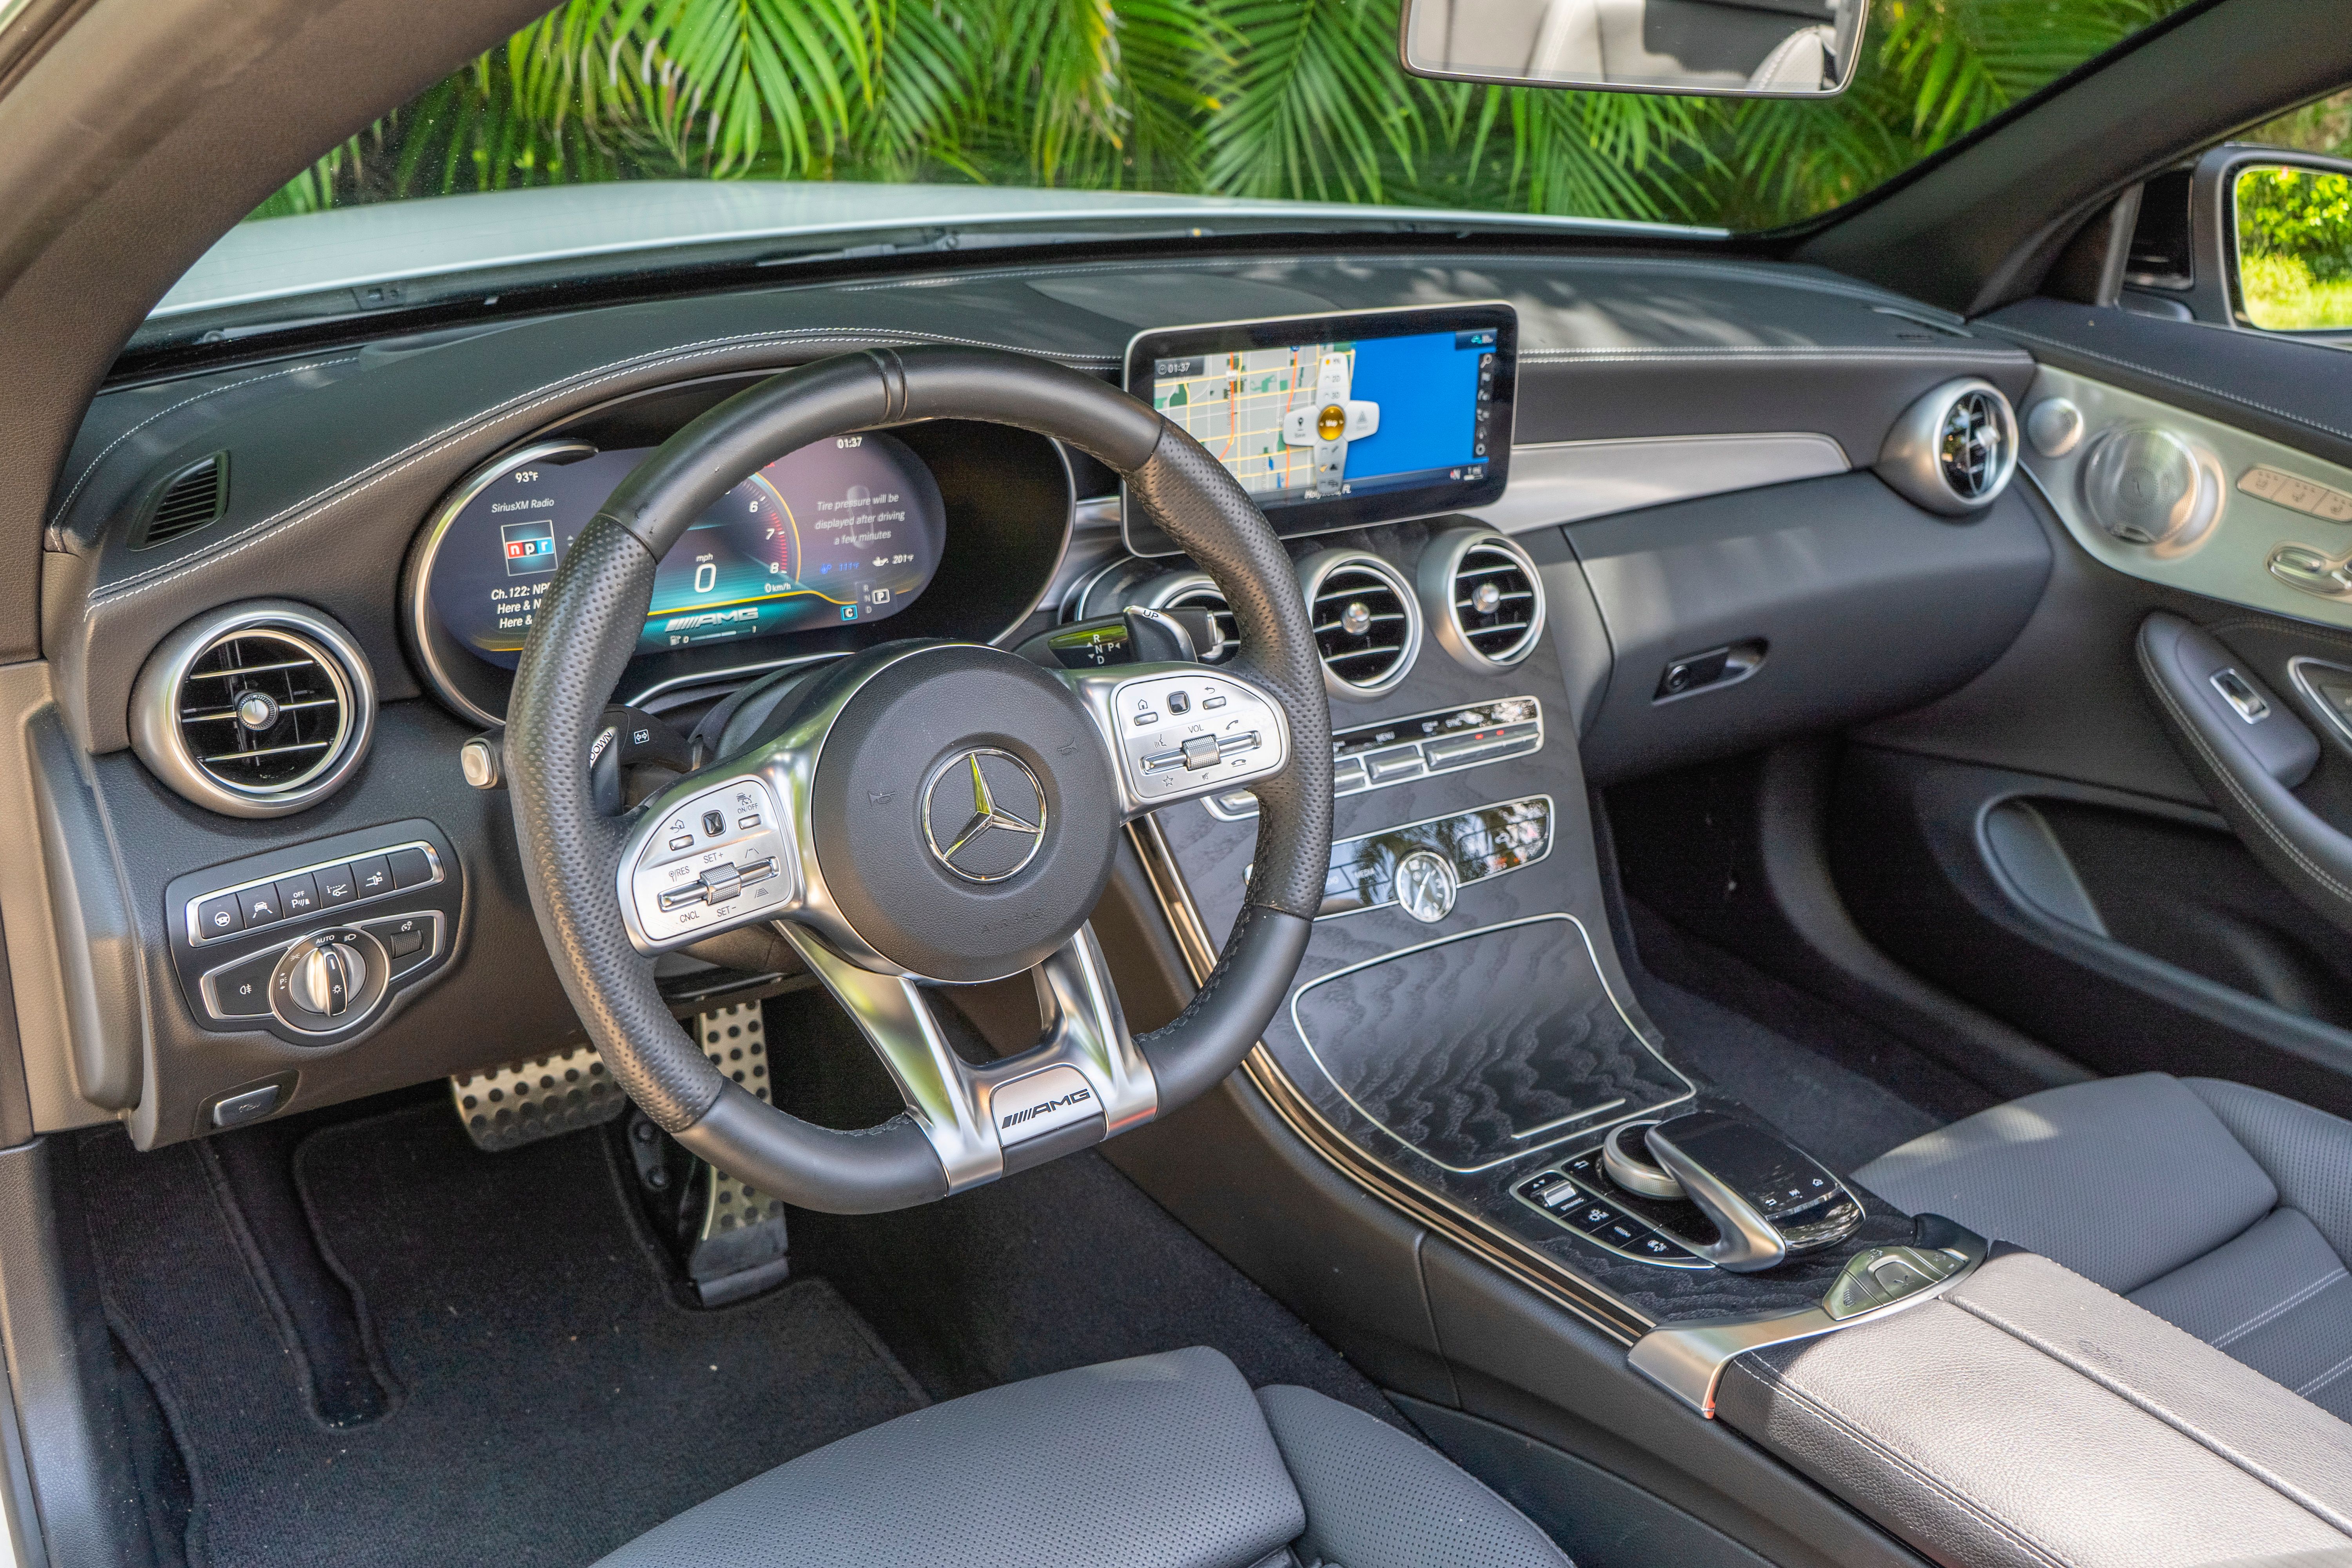 2019 Mercedes-AMG C43 Convertible - Driven